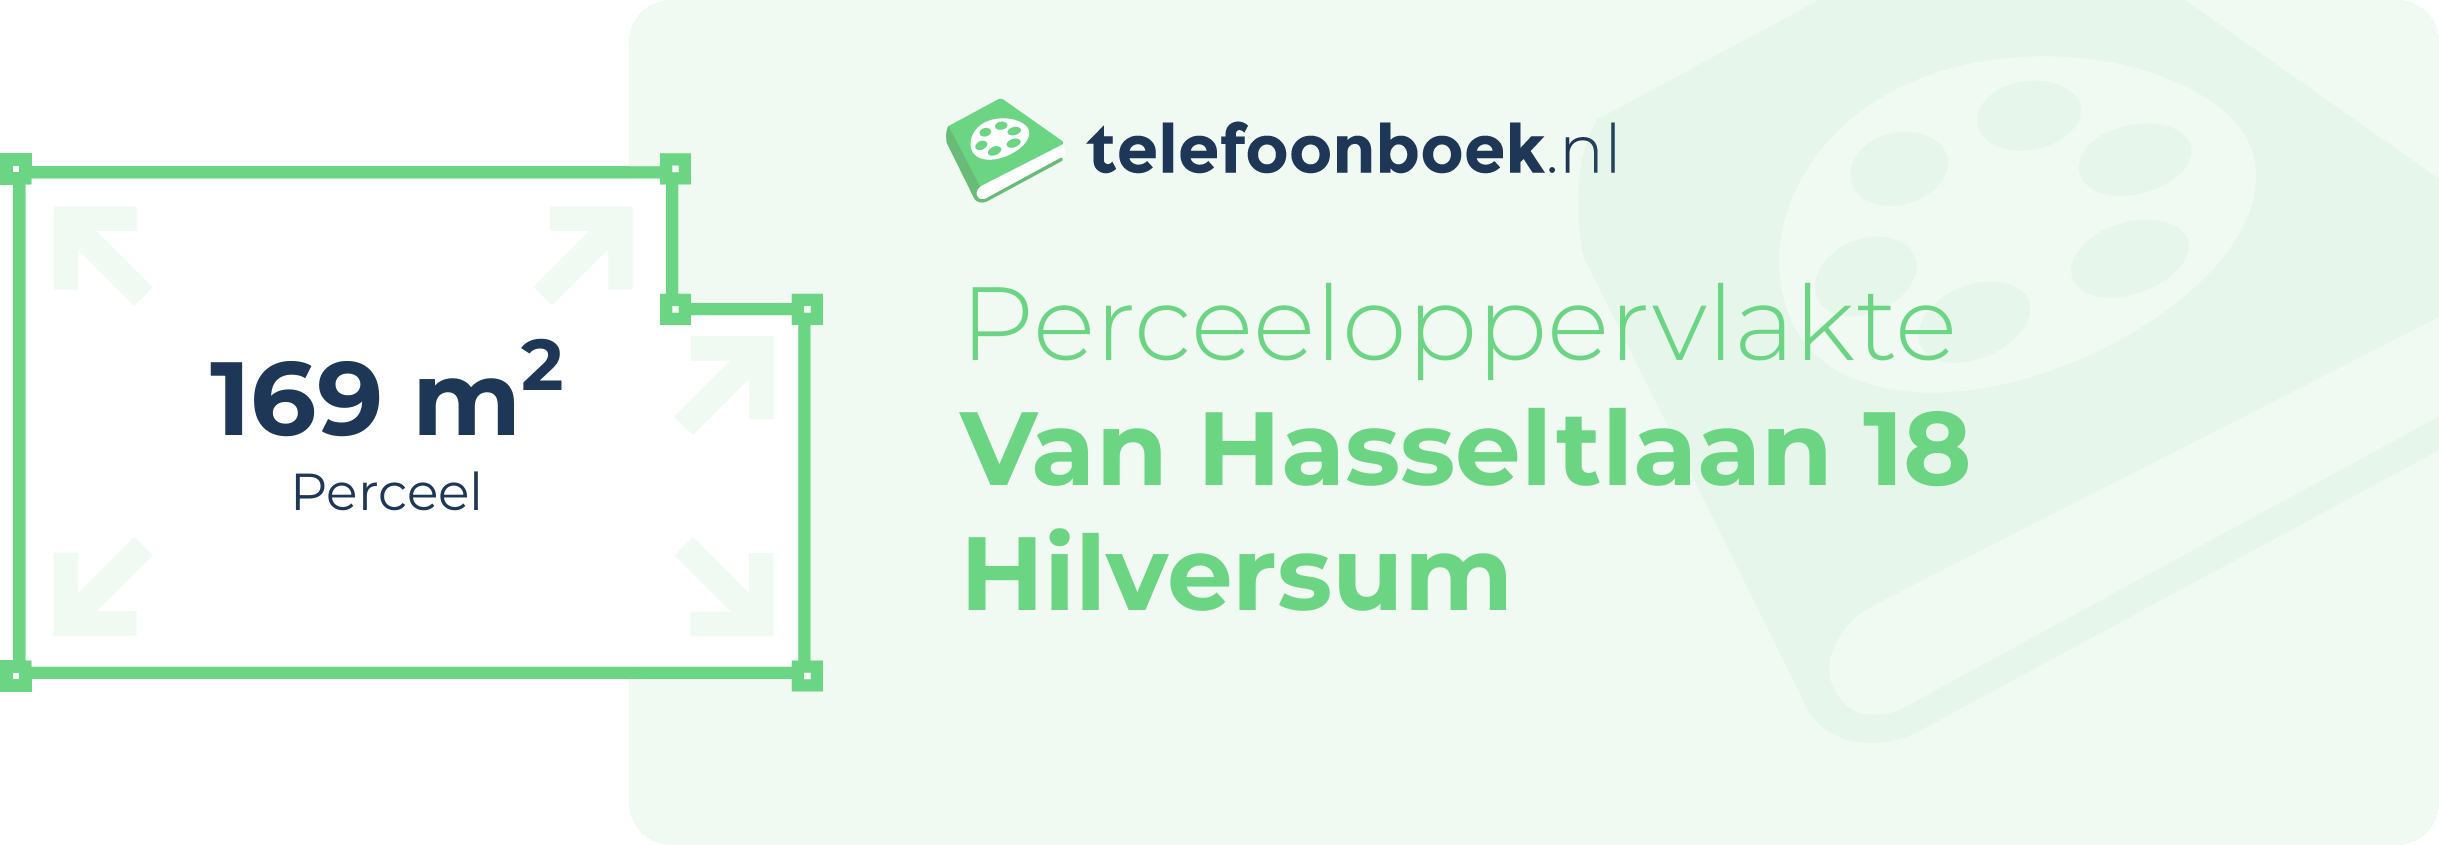 Perceeloppervlakte Van Hasseltlaan 18 Hilversum